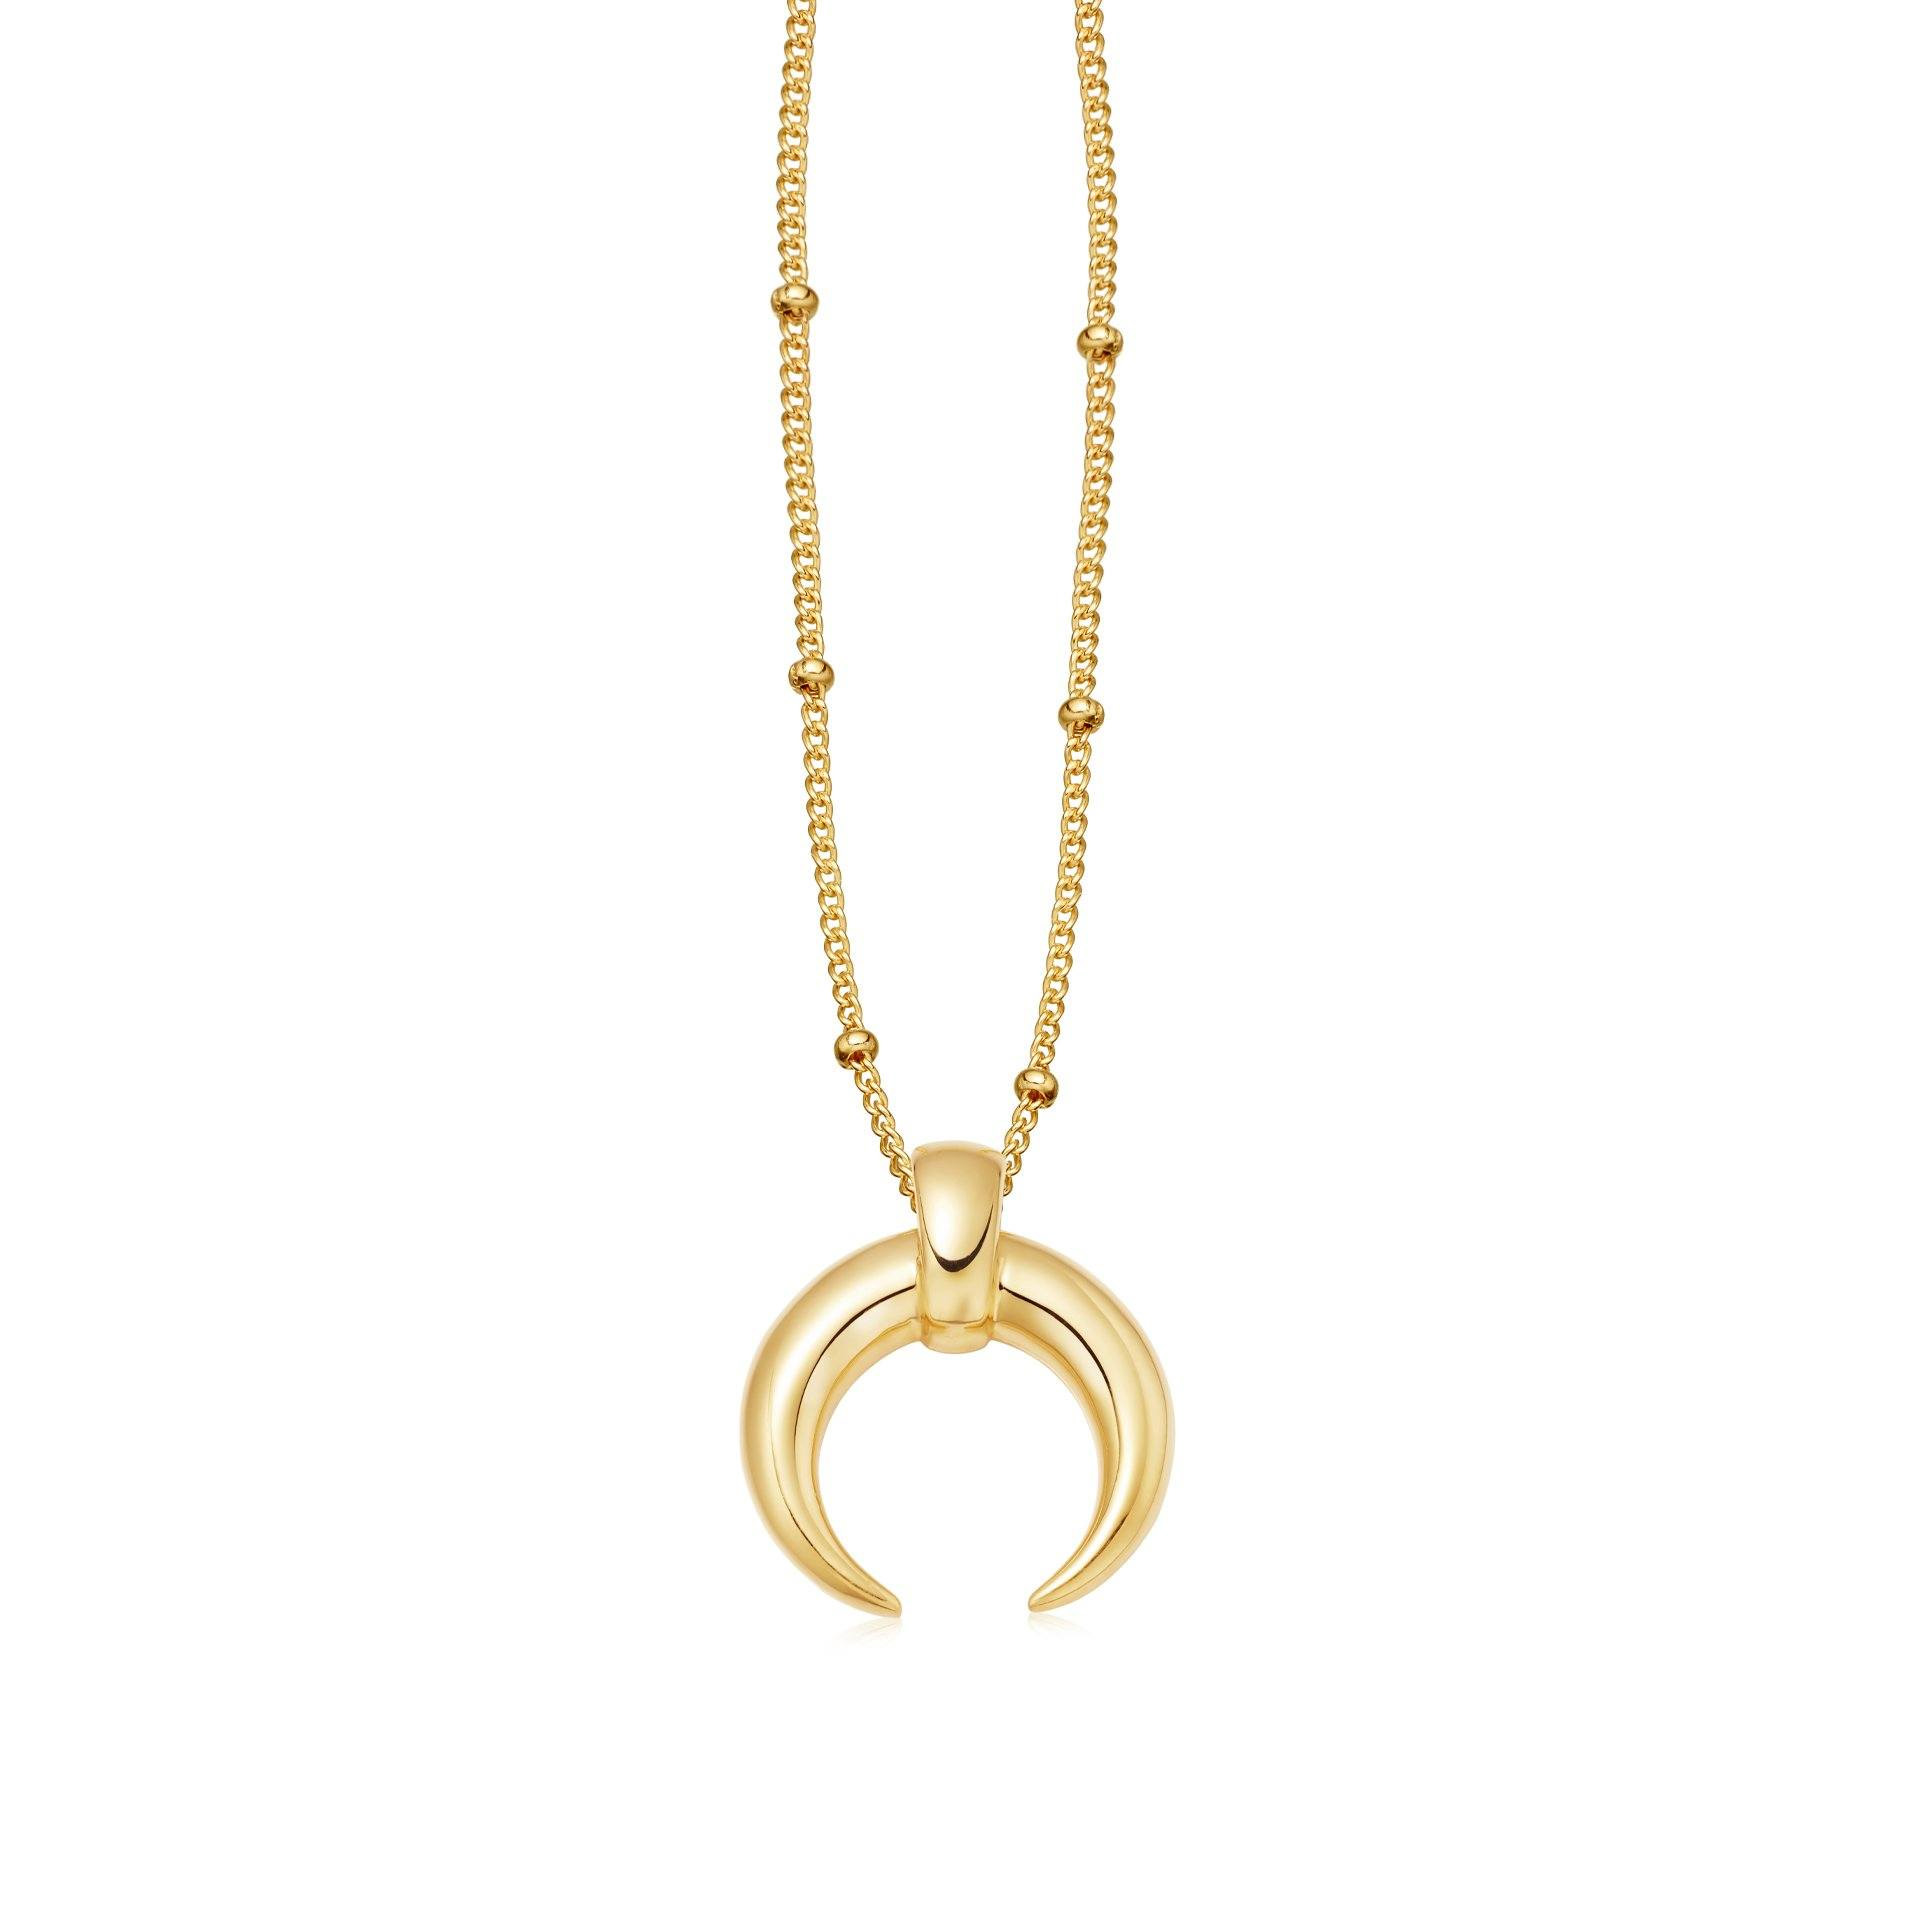 Toptan OEM/ODM Takı tasarımı 18 ayar altın vermeil boynuz zincir kolye Gümüş takı